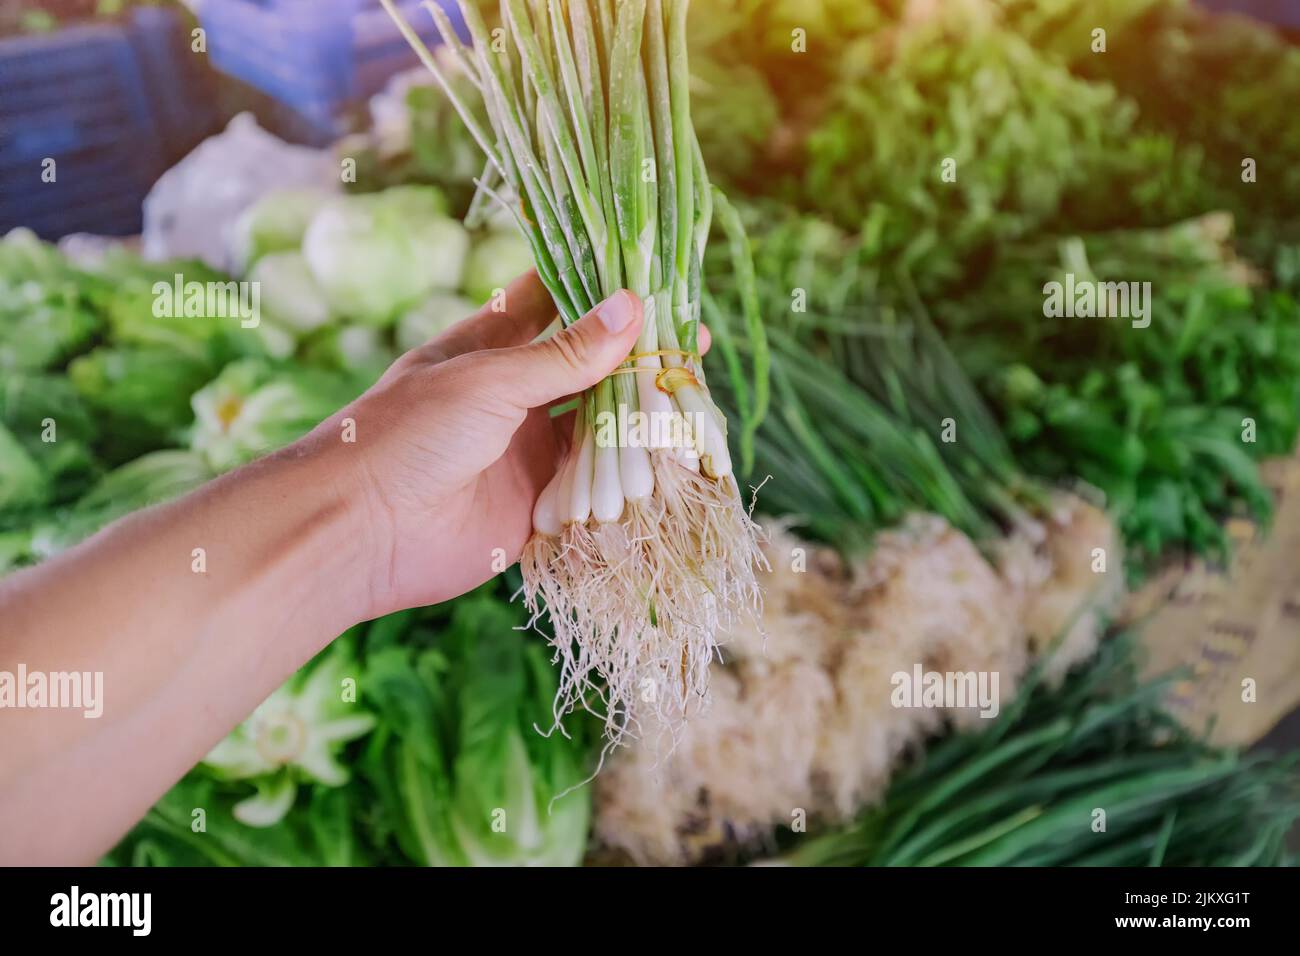 Los compradores le dan cebolla verde y otras hierbas en el mercado local de agricultores. Elección de la producción ecológica de alimentos e ingredientes frescos Foto de stock